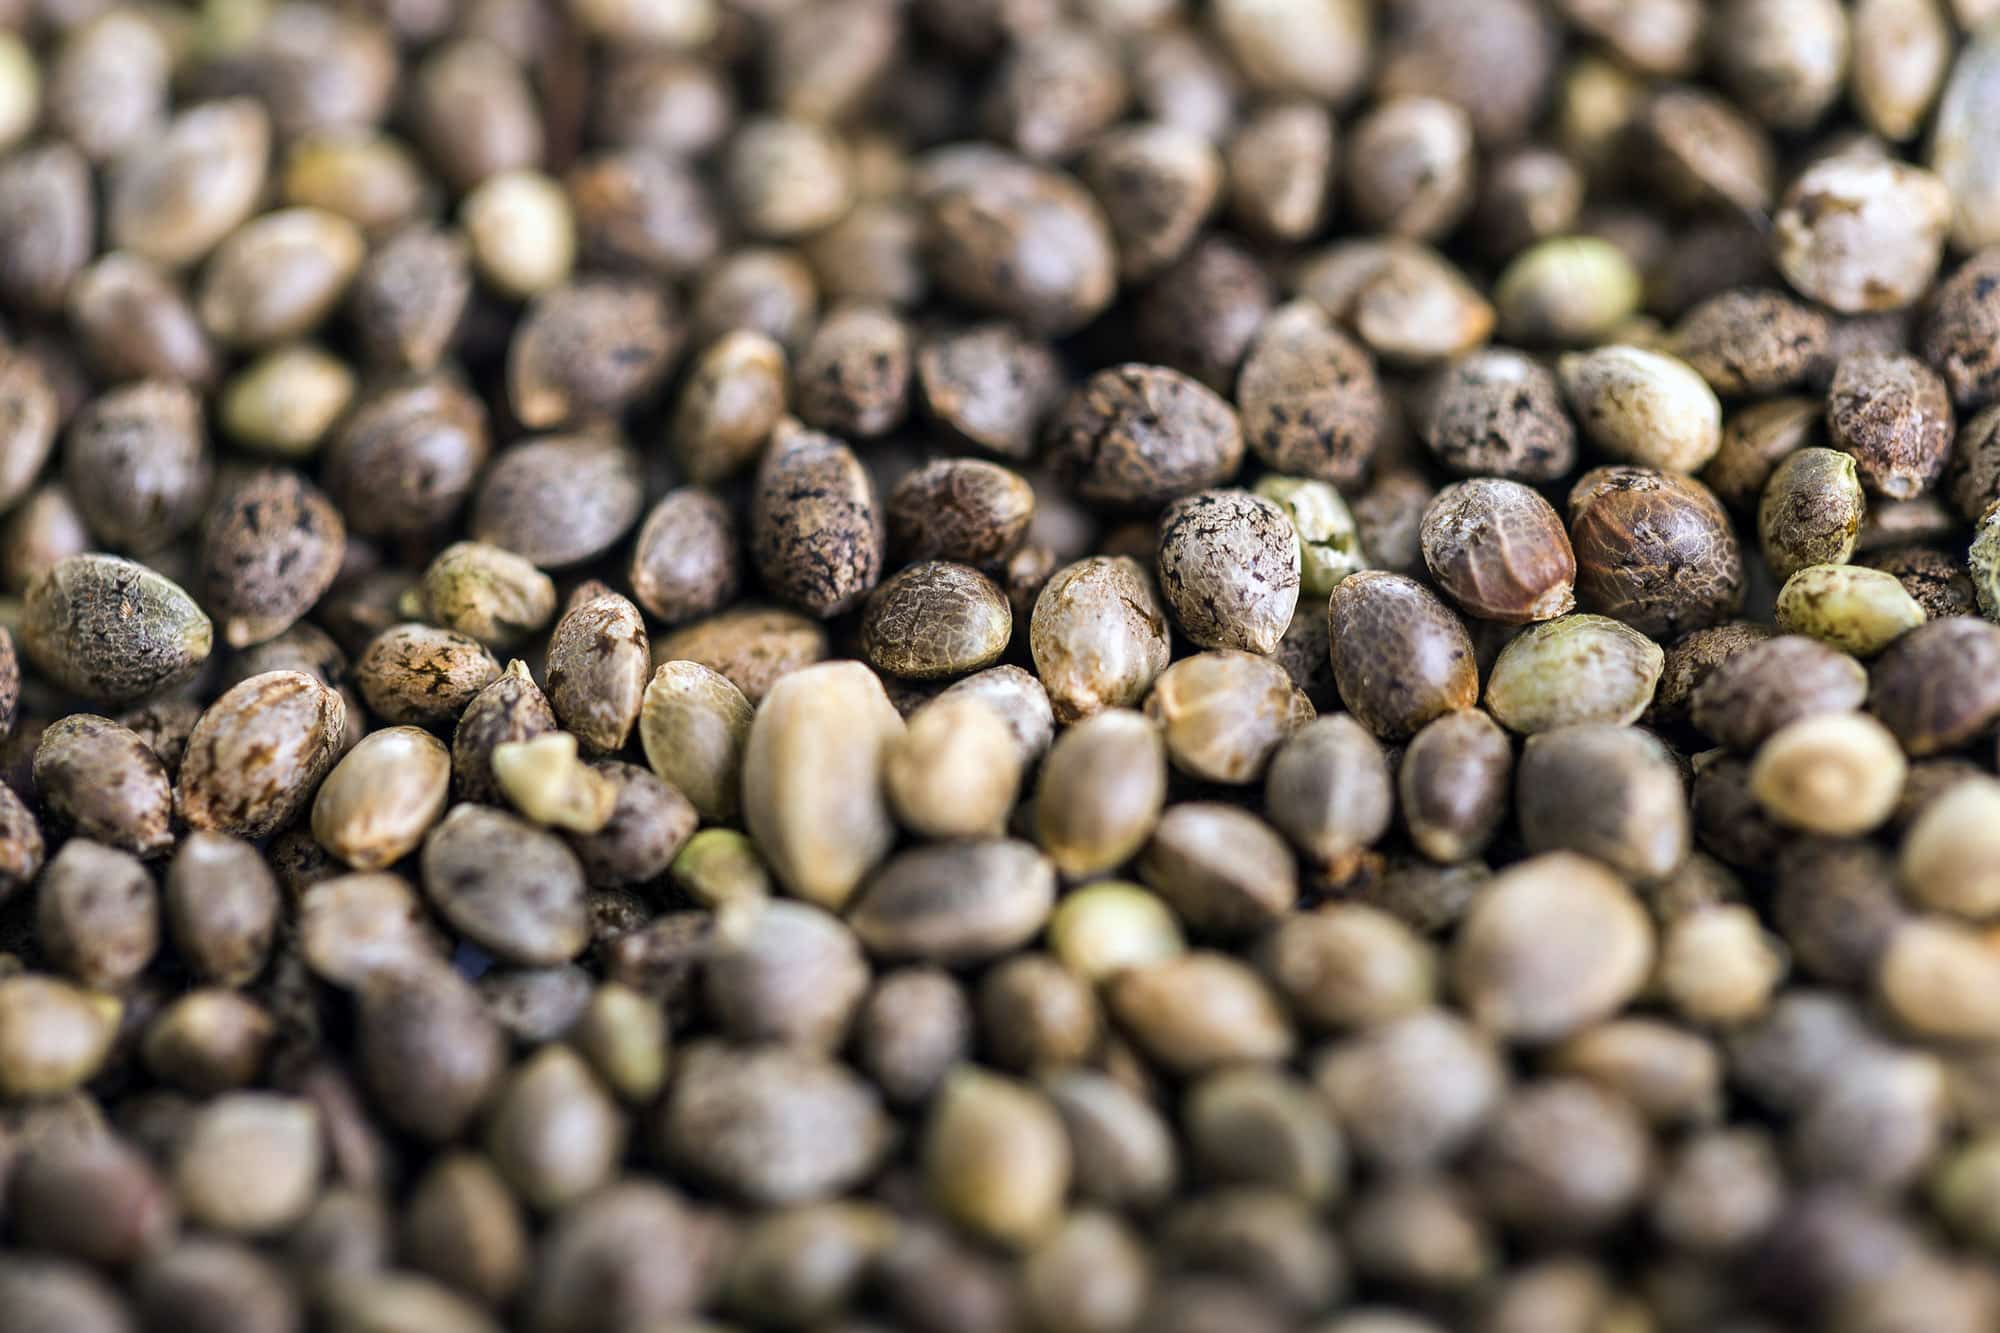 Absolute Cannabis Seeds - Absolute Cannabis Seeds